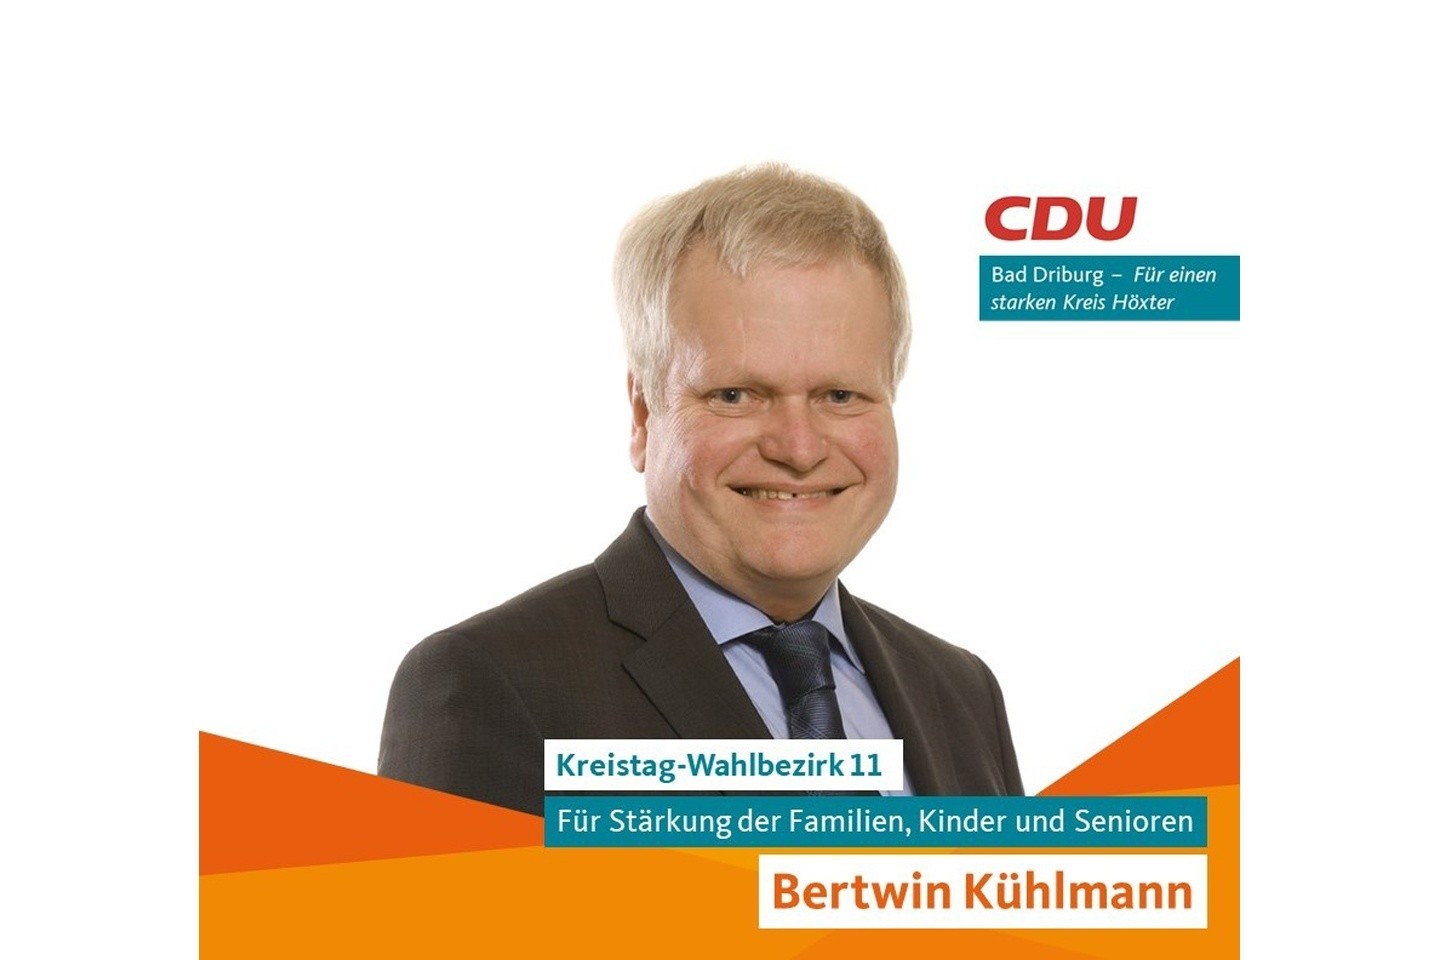 (KW2020) Parteien stellen vor: Heute Bertwin Kühlmann (CDU) – Für Stärkung der Familien, Kinder und Senioren